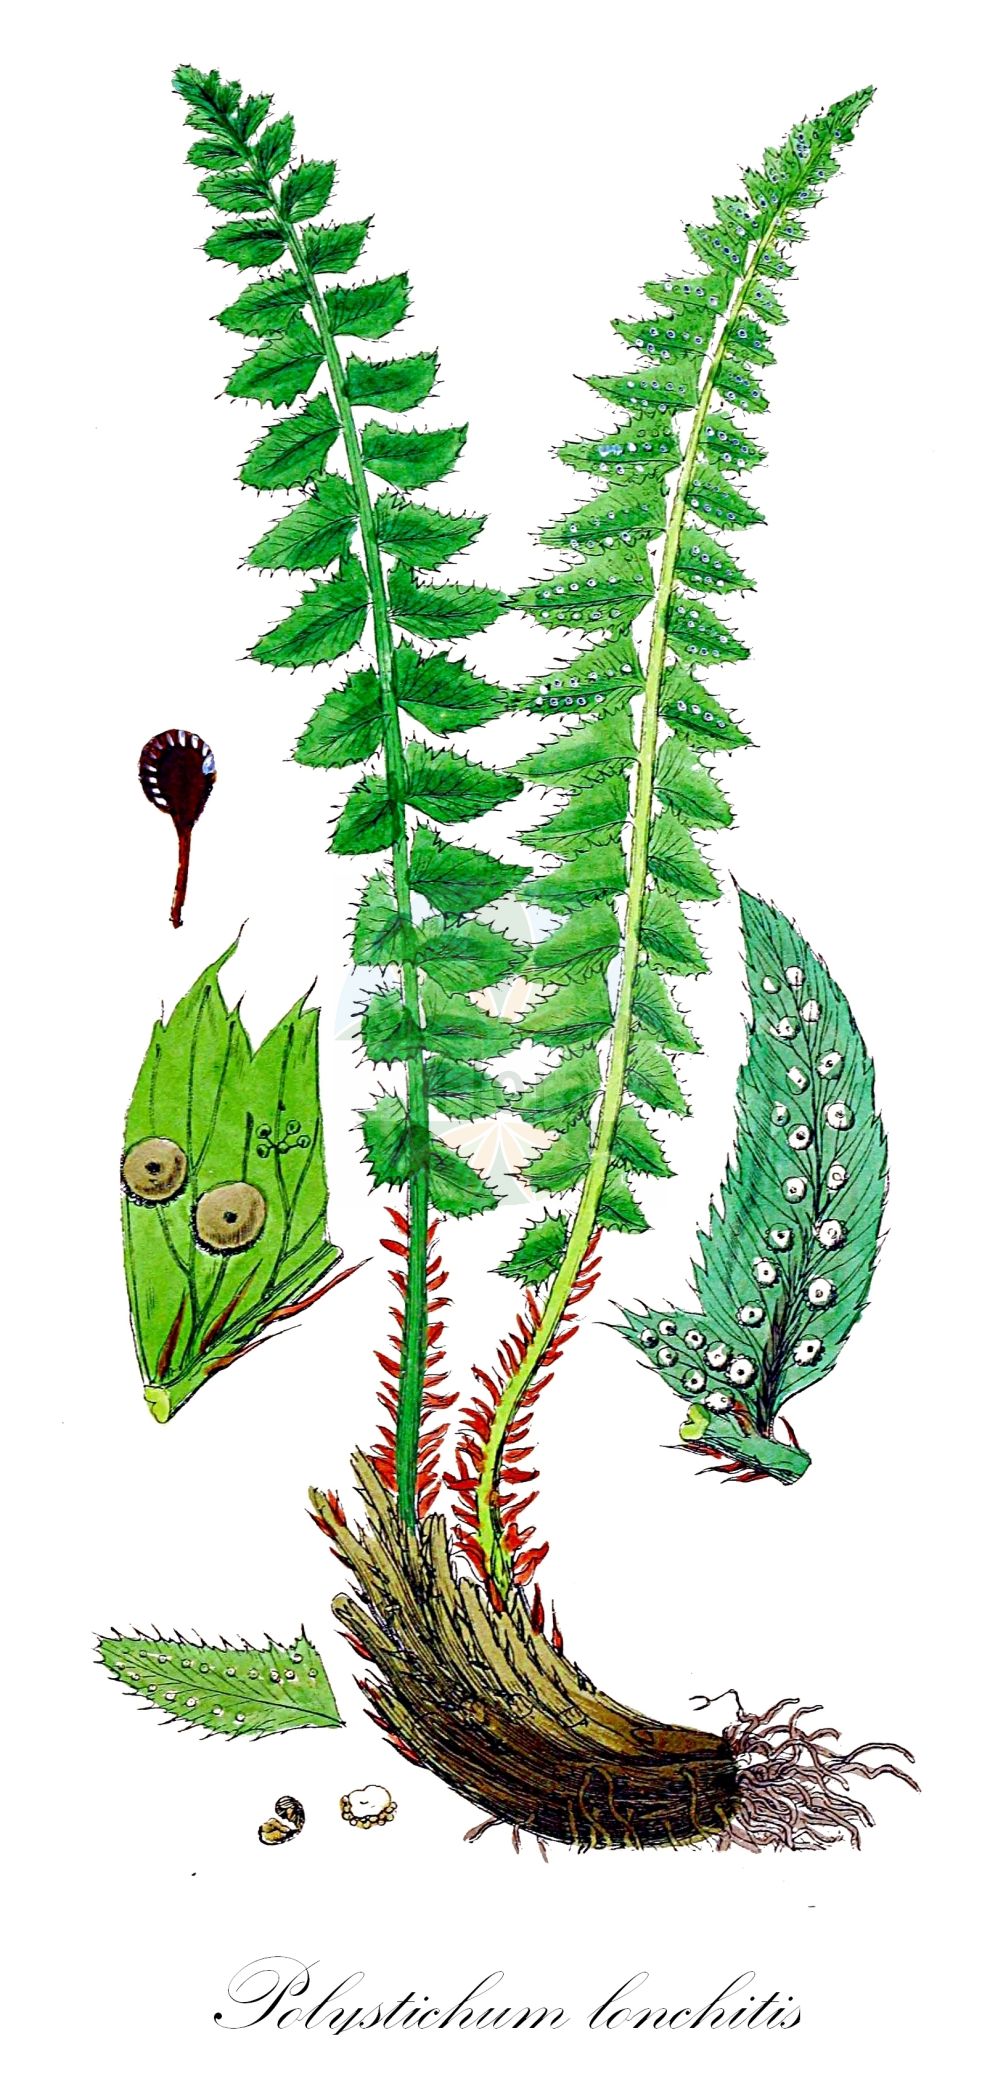 Historische Abbildung von Polystichum lonchitis (Lanzen-Schildfarn - Holly-fern). Das Bild zeigt Blatt, Bluete, Frucht und Same. ---- Historical Drawing of Polystichum lonchitis (Lanzen-Schildfarn - Holly-fern). The image is showing leaf, flower, fruit and seed.(Polystichum lonchitis,Lanzen-Schildfarn,Holly-fern,Aspidium lonchitis,Dryopteris lonchitis,Polypodium lonchitis,Polystichum lonchitis,Lanzen-Schildfarn,Holly-fern,Northern Hollyfern,Polystichum,Schildfarn,Holly-fern,Dryopteridaceae,Wurmfarngewächse,Wood Fern family,Blatt,Bluete,Frucht,Same,leaf,flower,fruit,seed,Sowerby (1790-1813))